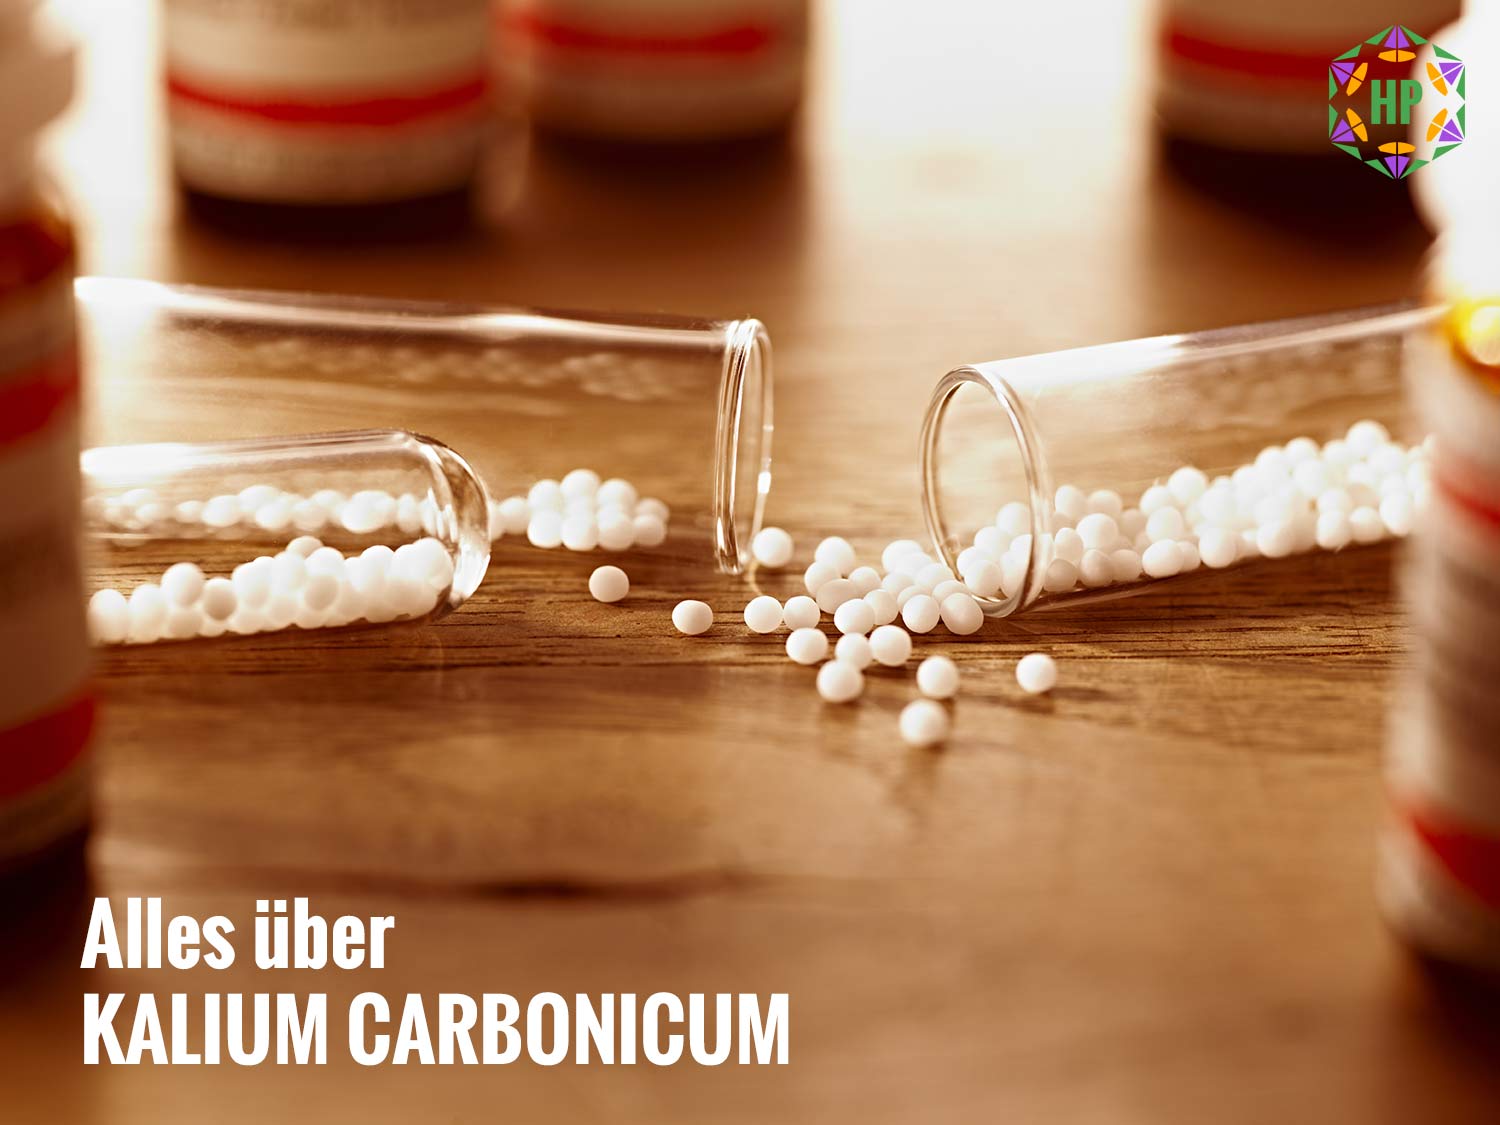 Kalium carbonicum